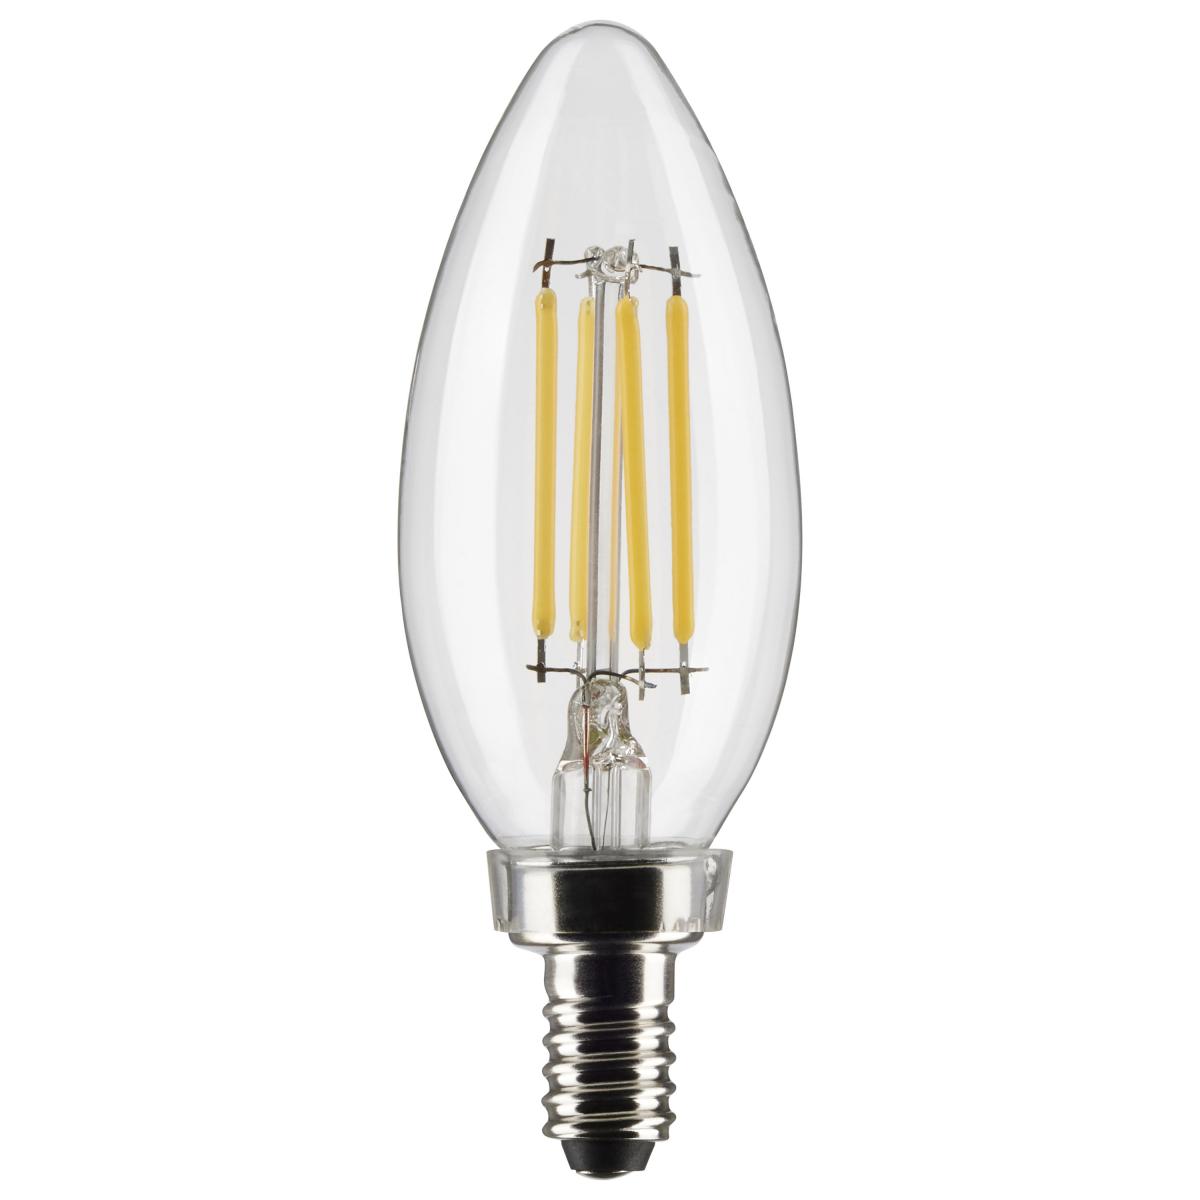 BES-27526 - Lampadine e Adattatori - beselettronica - Lampadina led E27  irregolare 4W vintage filamento vetro ambrato luce calda 03